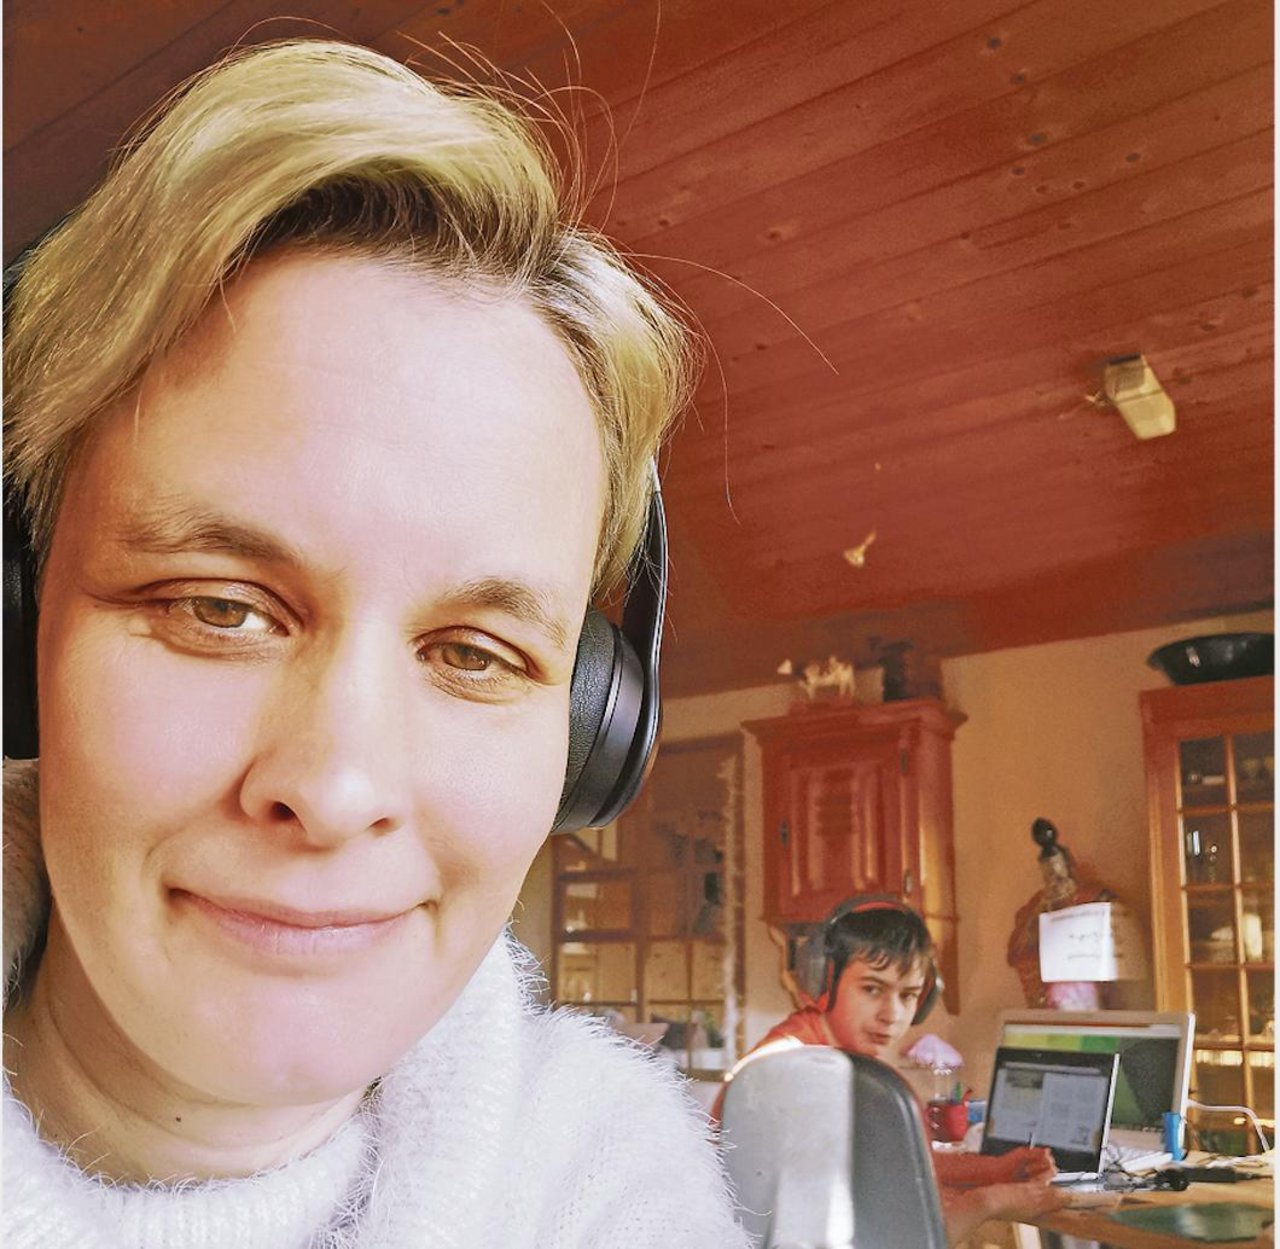 Redaktorin Simone Barth arbeitet im Homeoffice – und sie ist nicht alleine. (Bild sb)